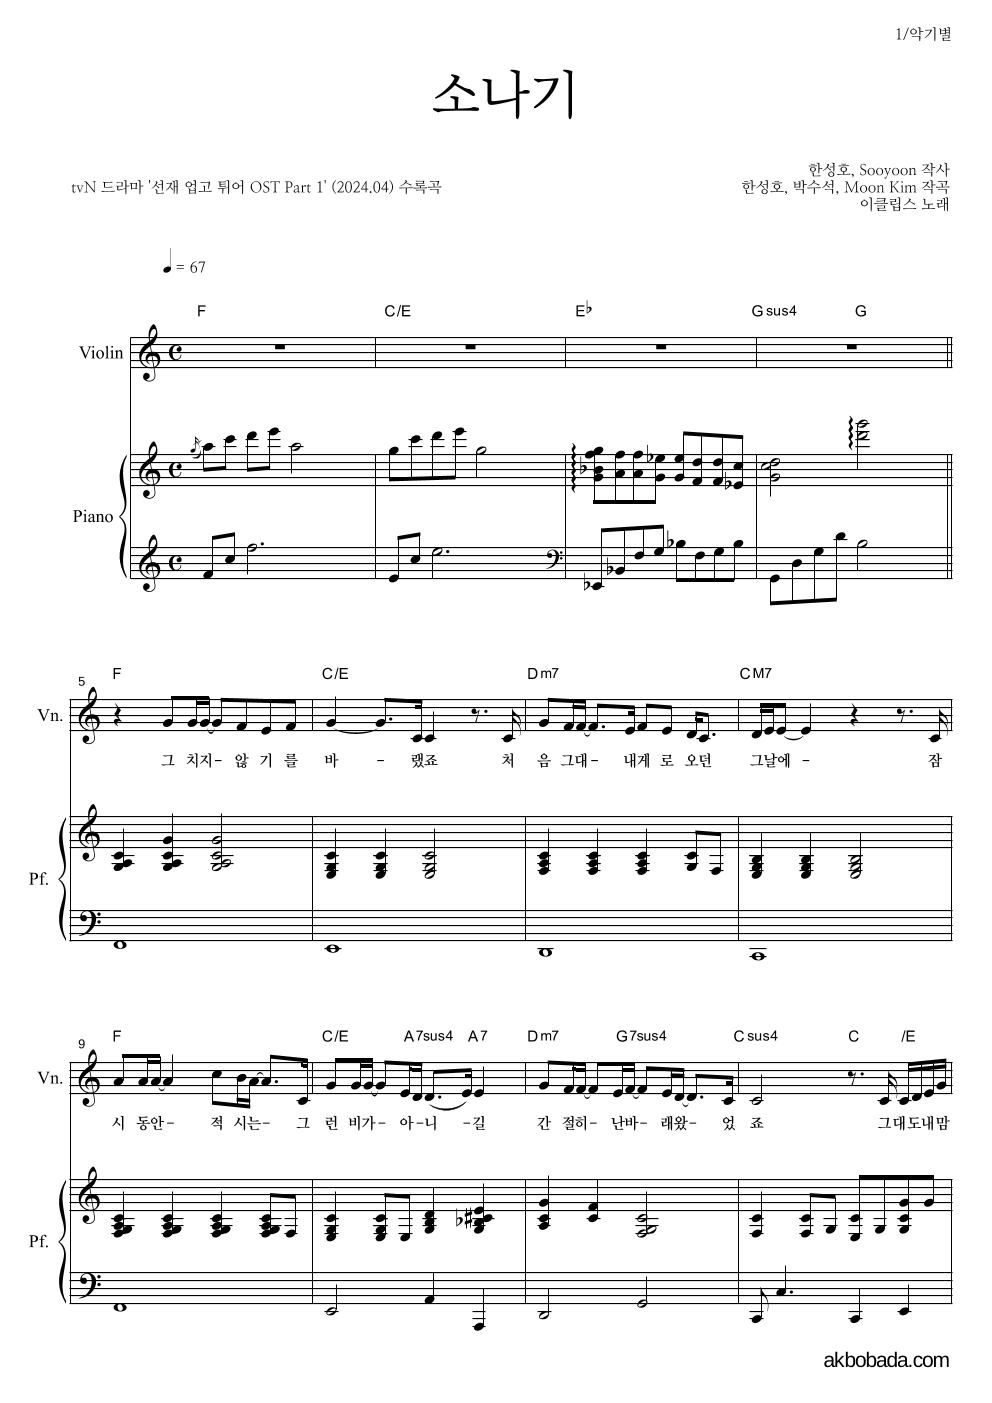 이클립스 - 소나기 바이올린&피아노 악보 